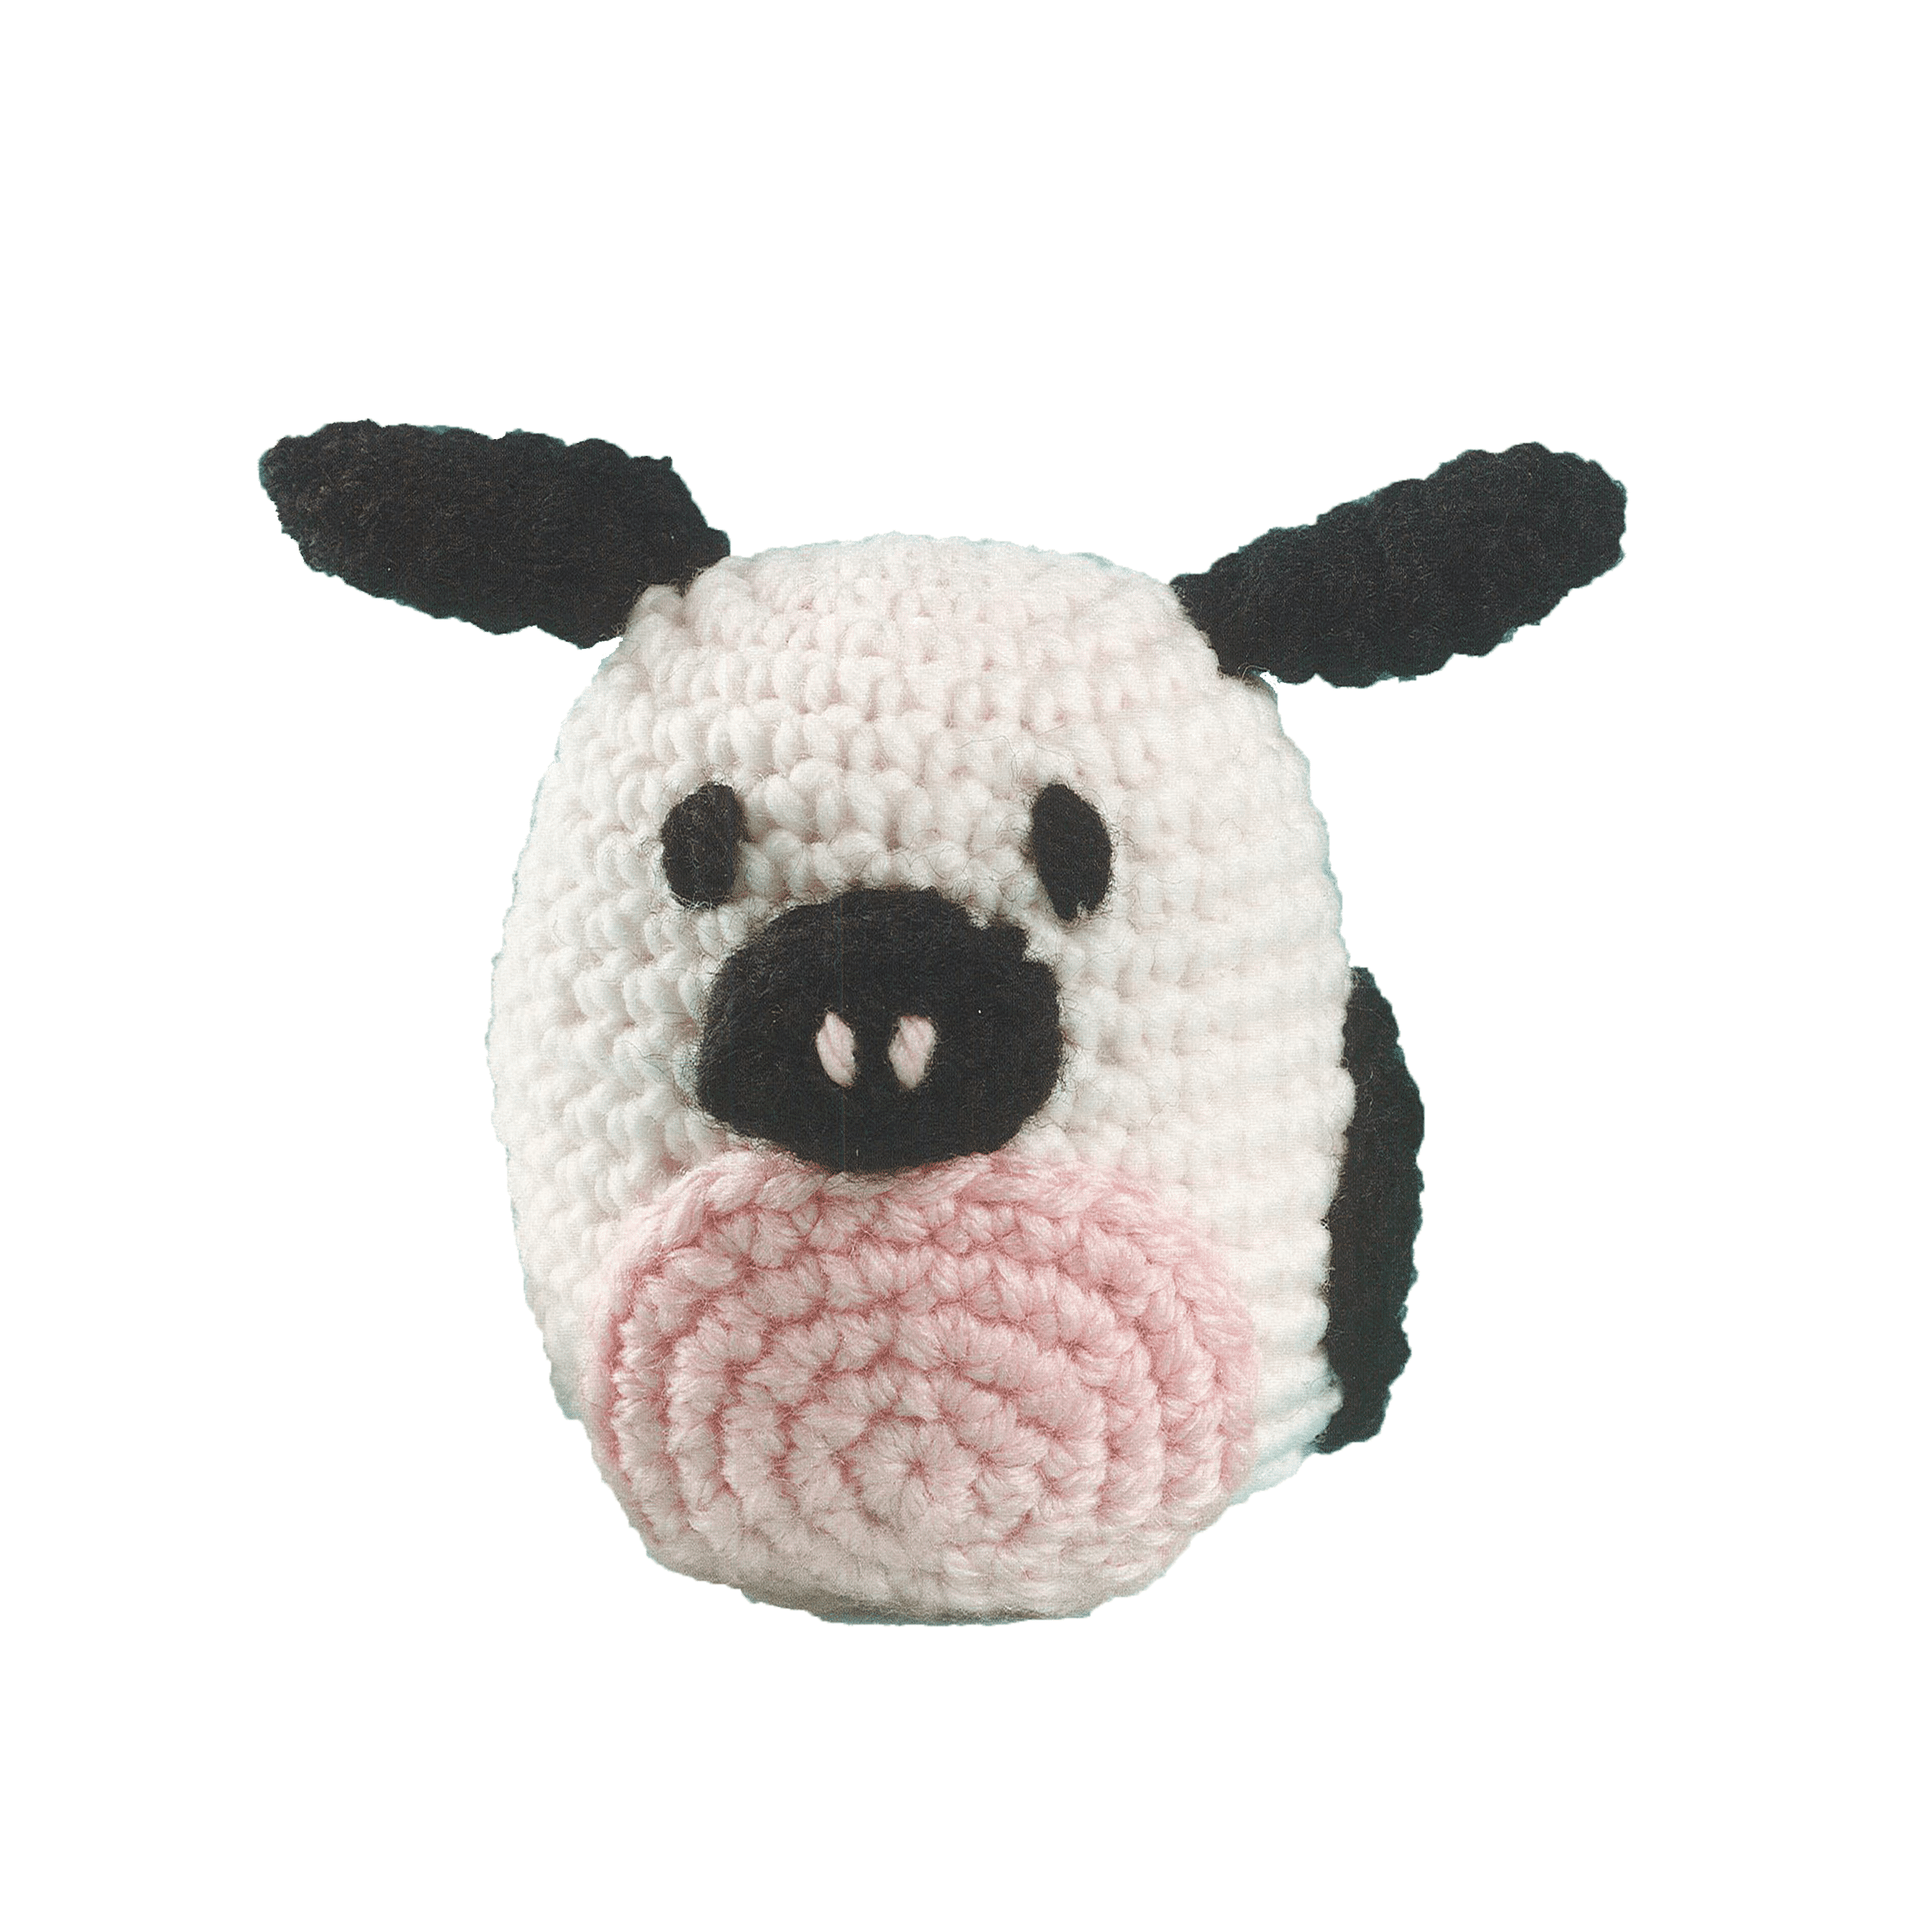 Leisure Arts Make A Little Friend Pudgie Cow Crochet Kit